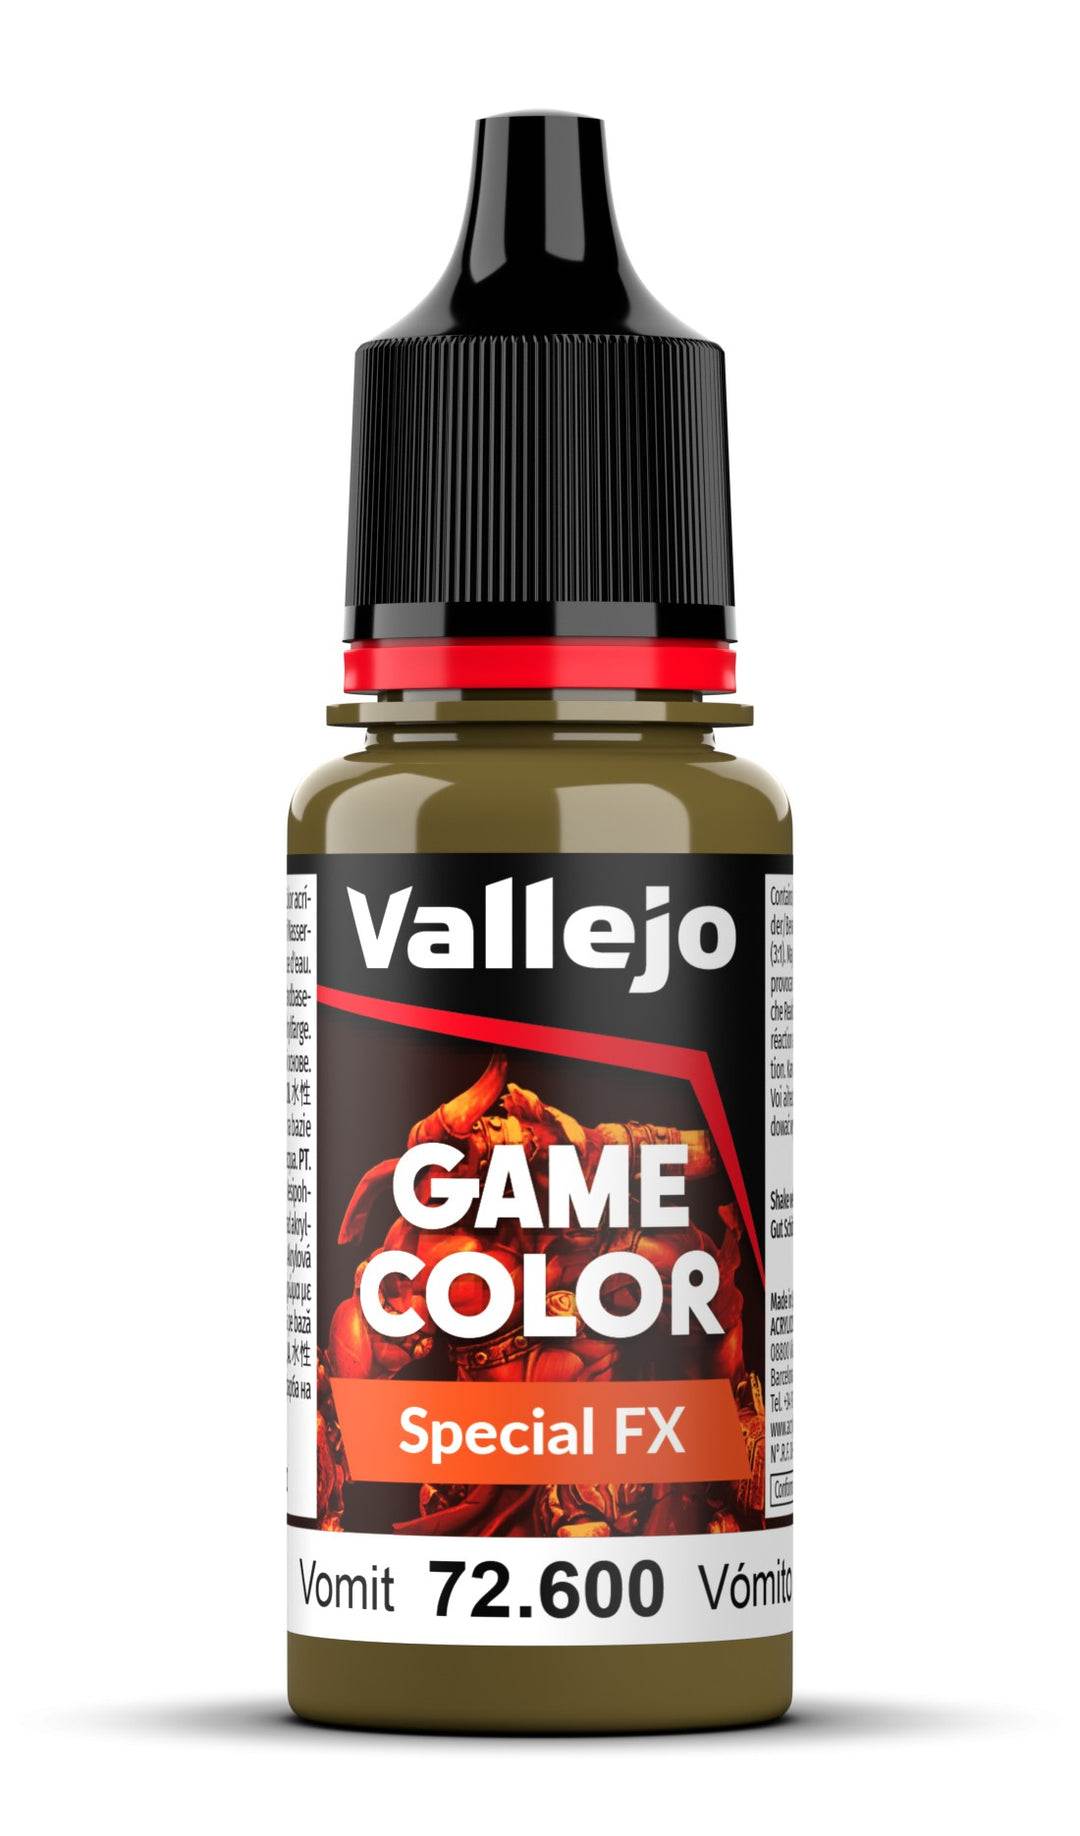 Vallejo Game Special FX - Vomit (Erbrochenes) 18 ml